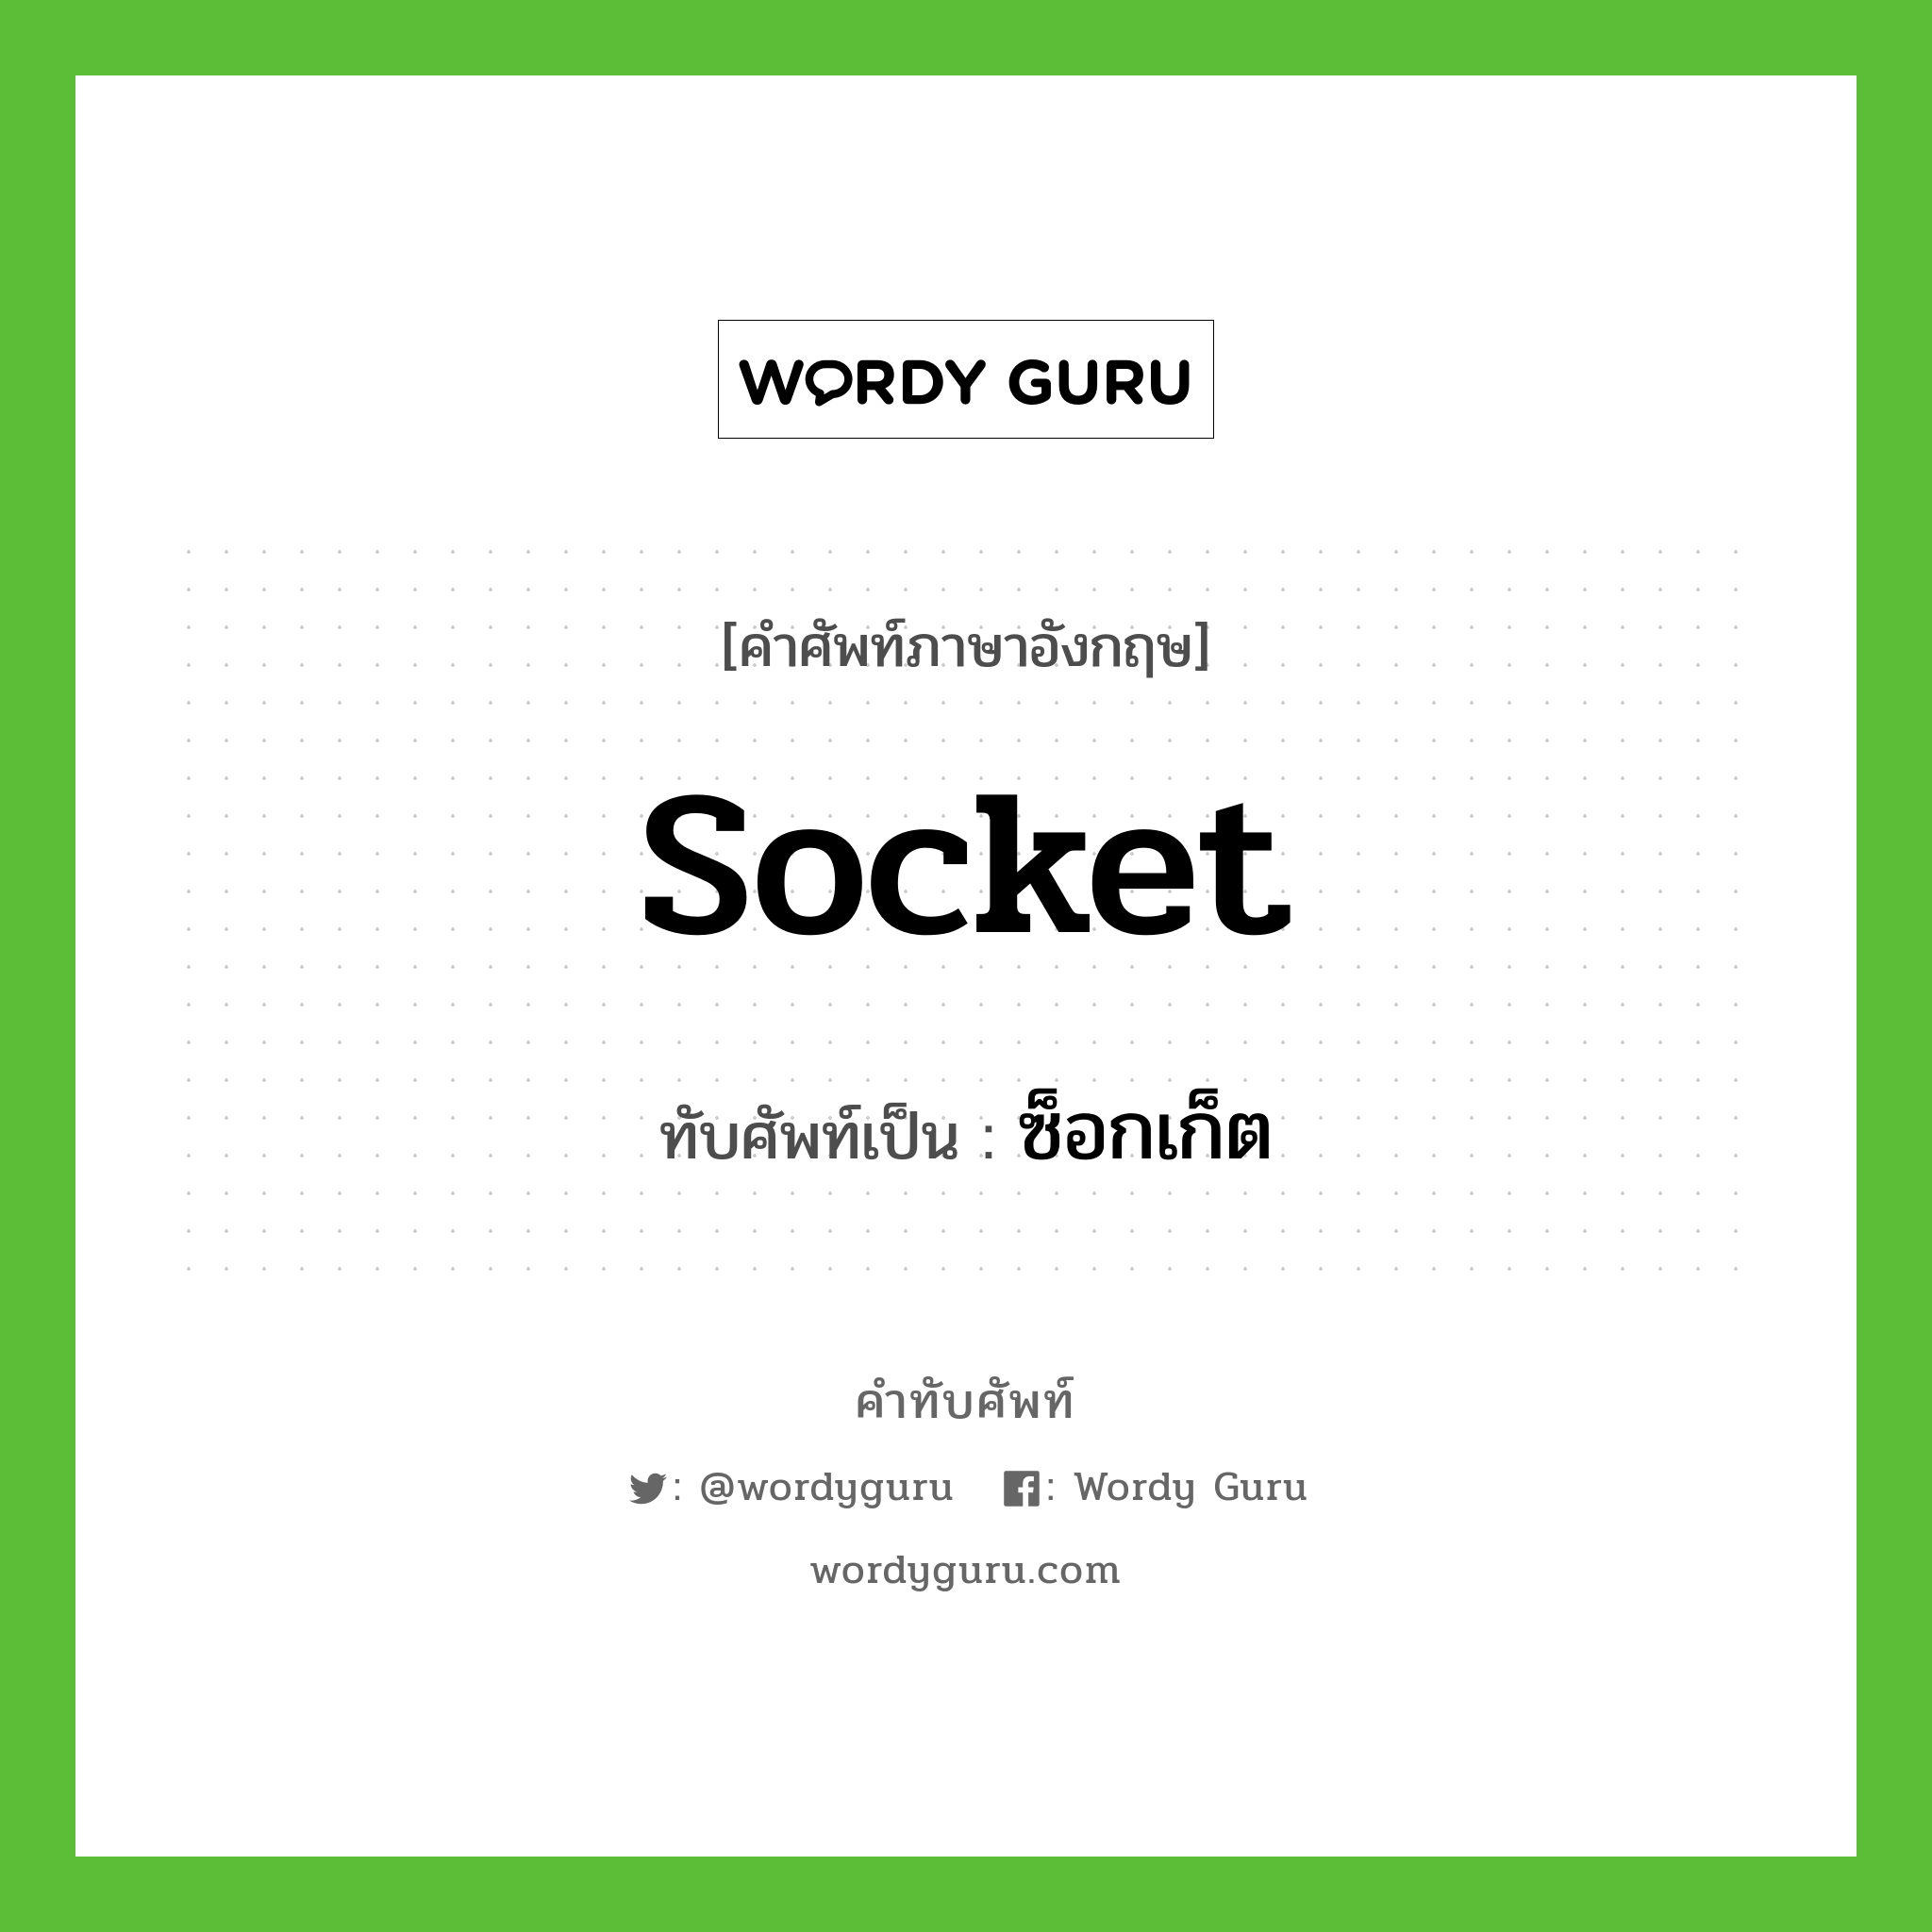 socket เขียนเป็นคำไทยว่าอะไร?, คำศัพท์ภาษาอังกฤษ socket ทับศัพท์เป็น ซ็อกเก็ต